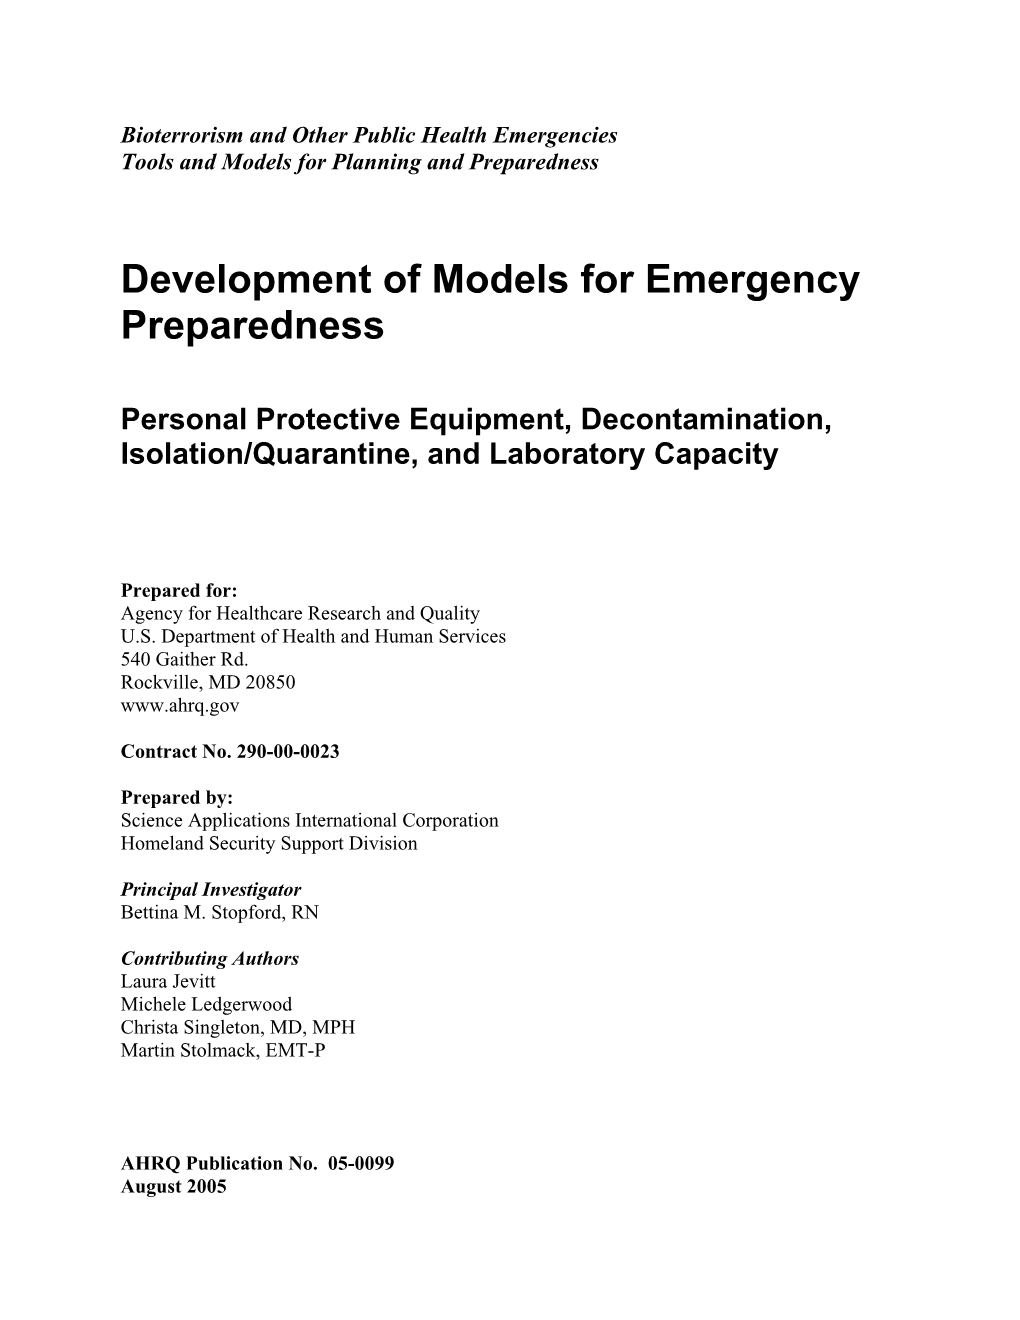 Development of Models for Emergency Preparedness